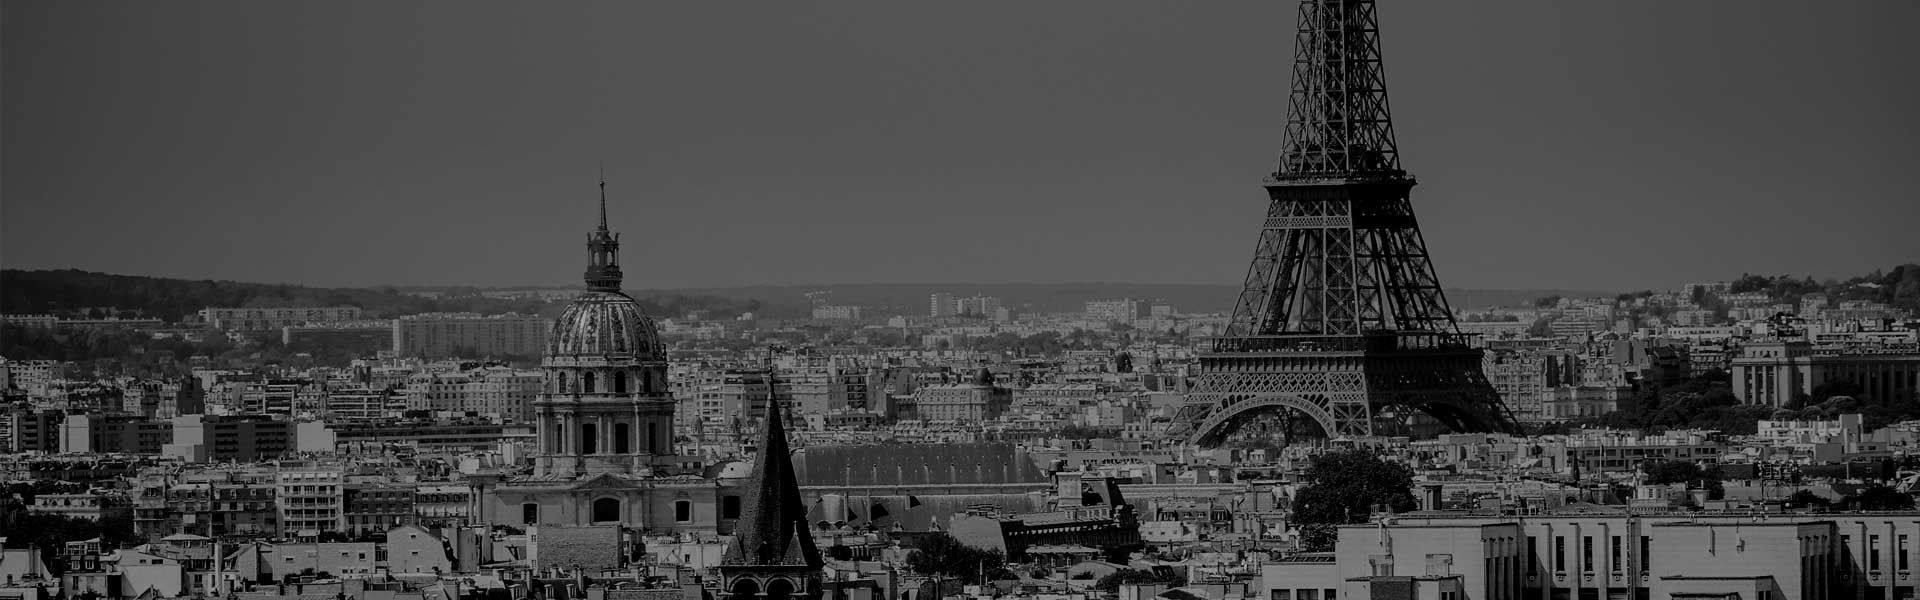 Contactez France investigation, détective privé à Paris - consultation gratuite